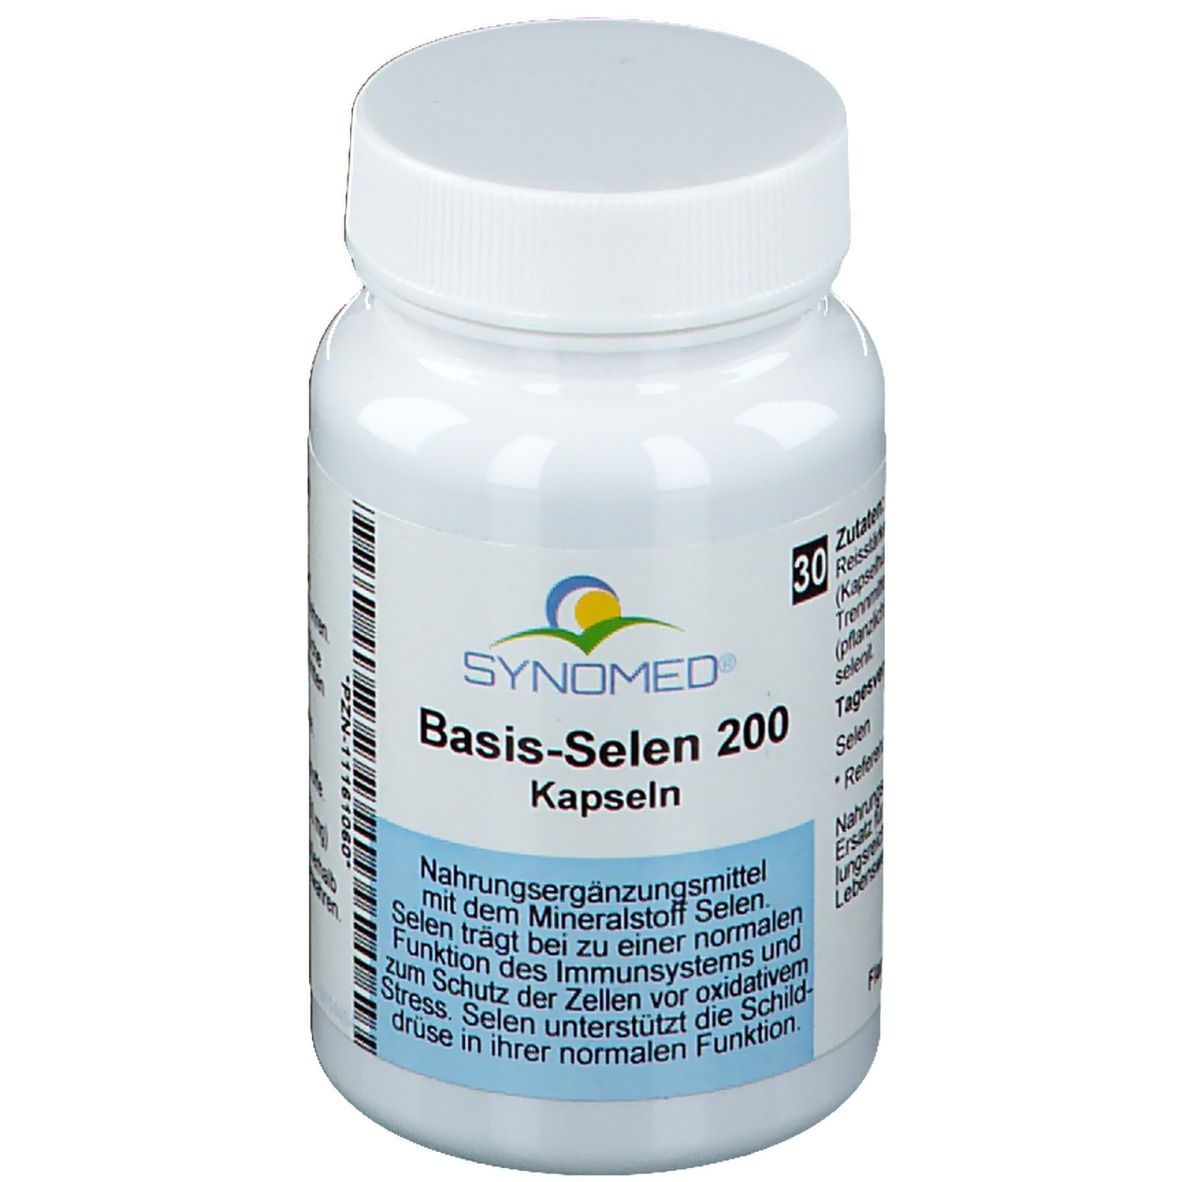 SYNOMED Basis-Selen